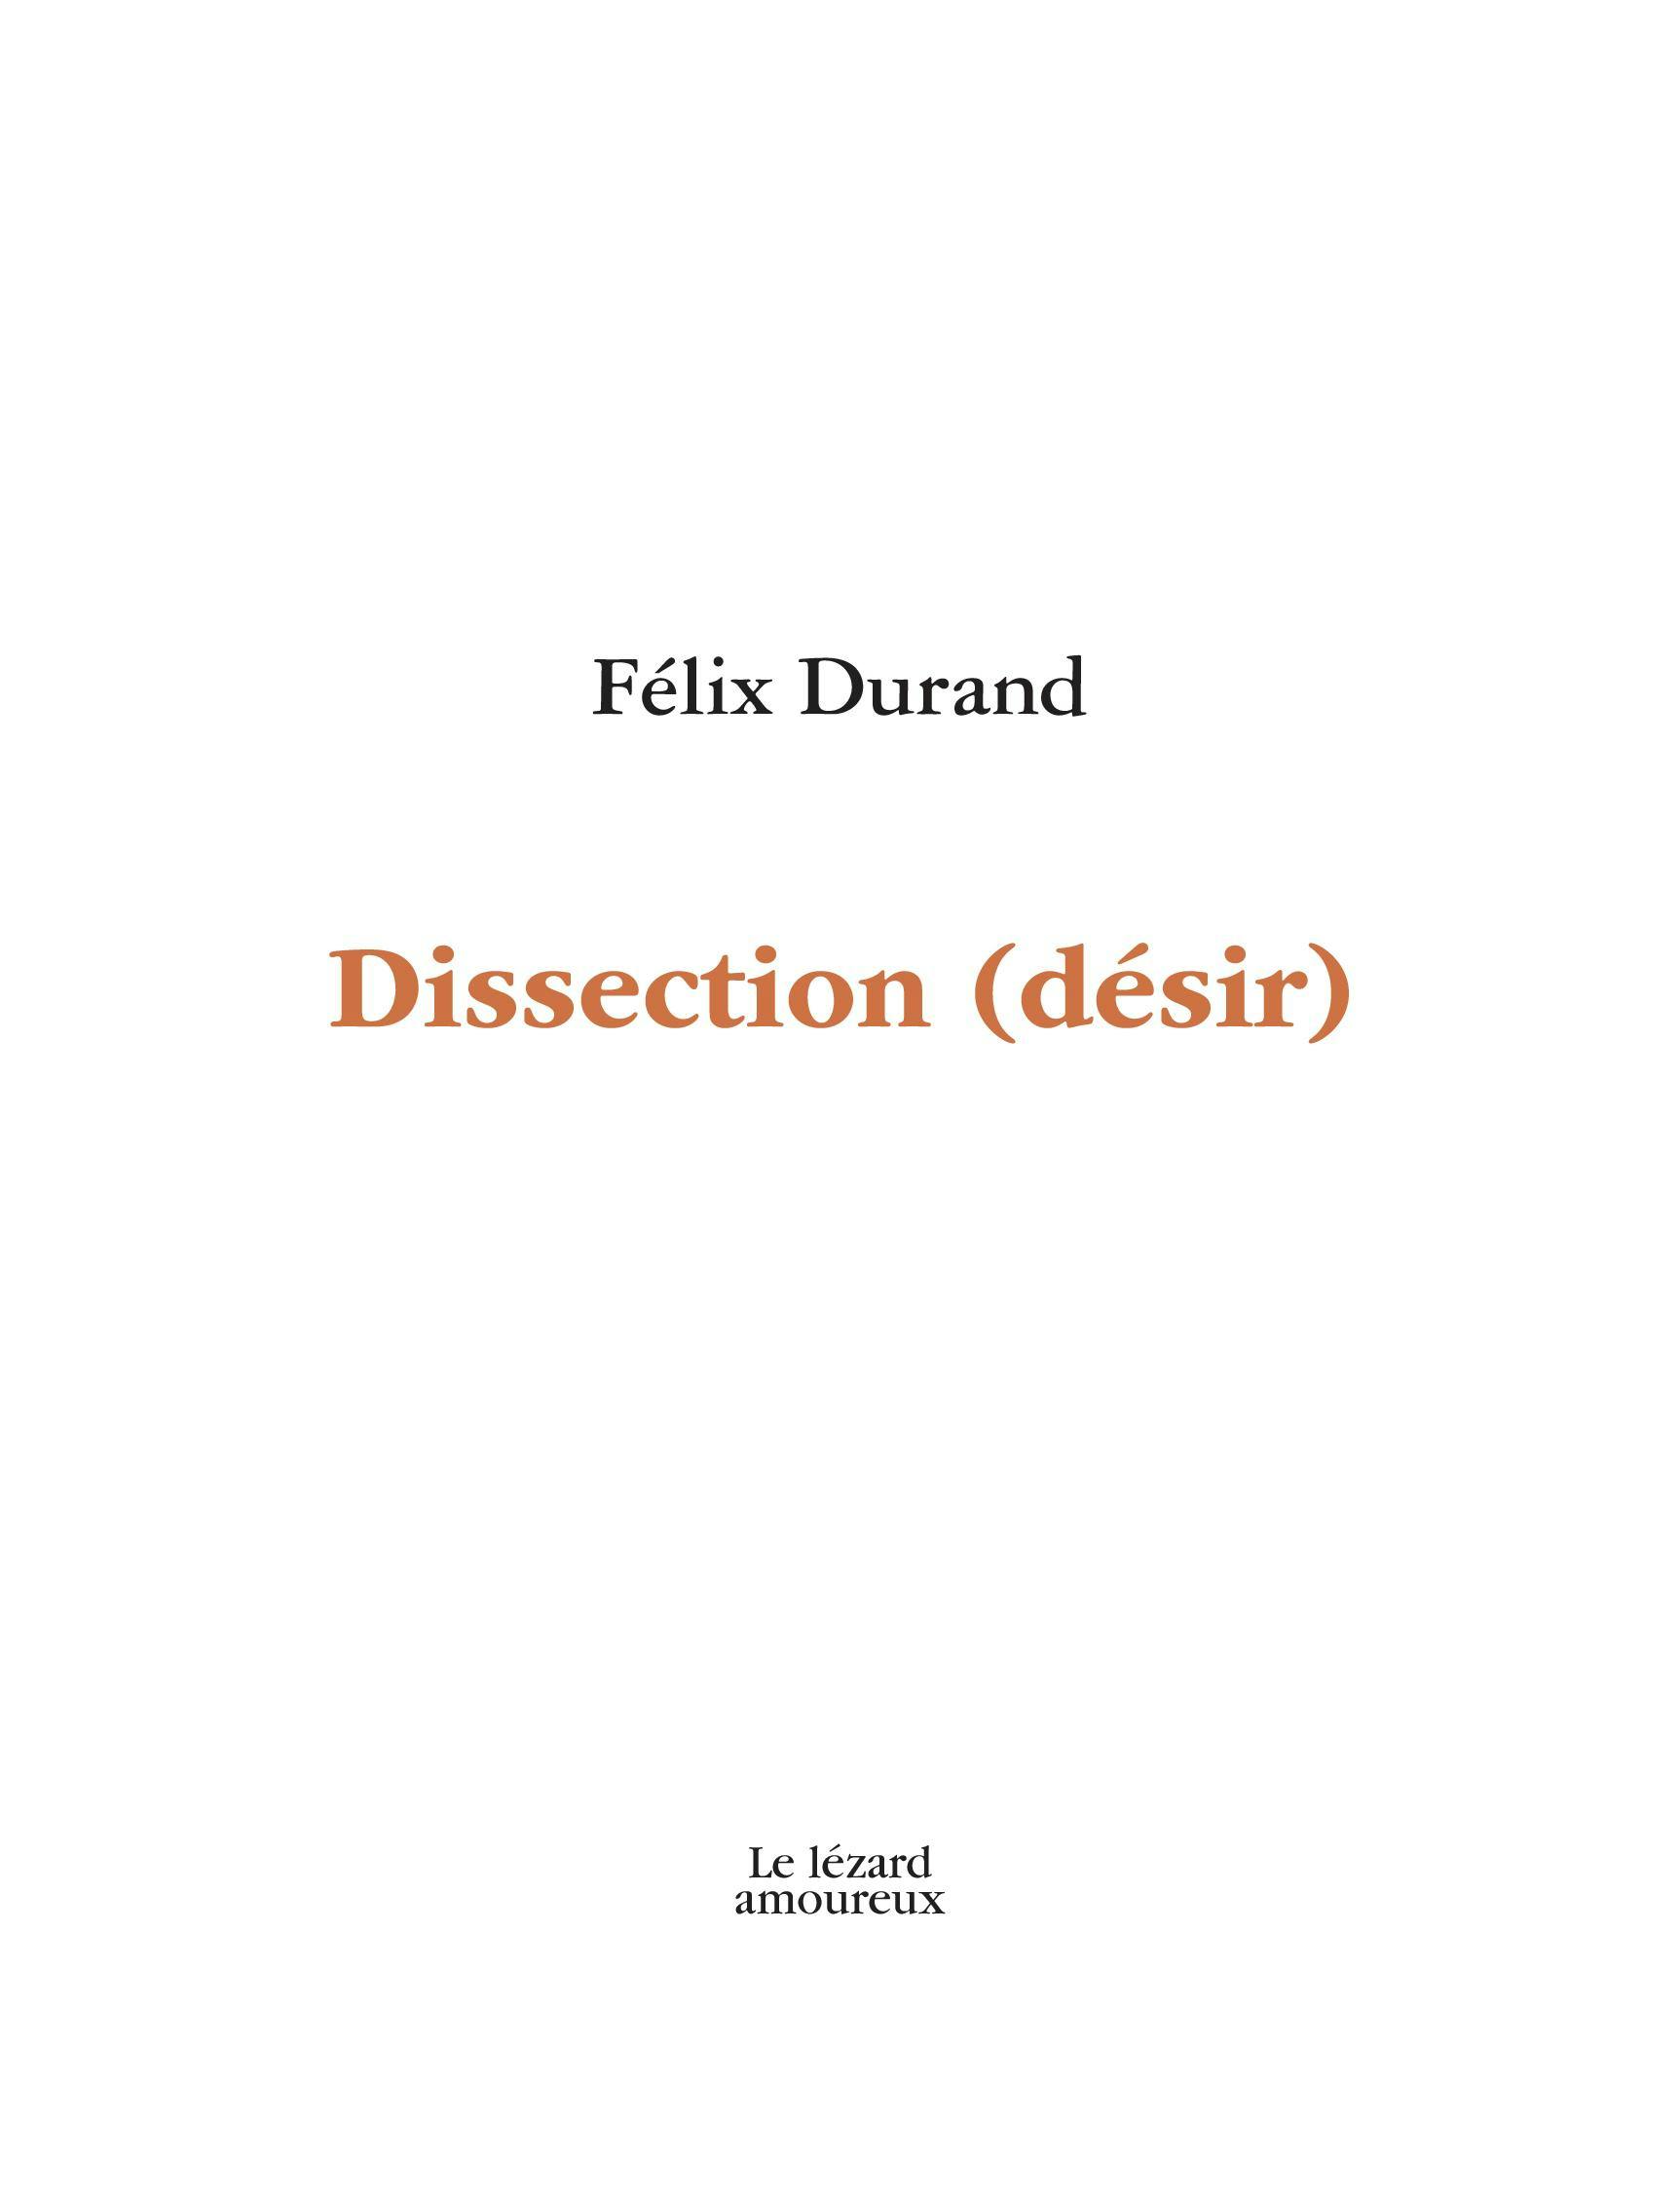 Dissection (désir) | Félix Durand